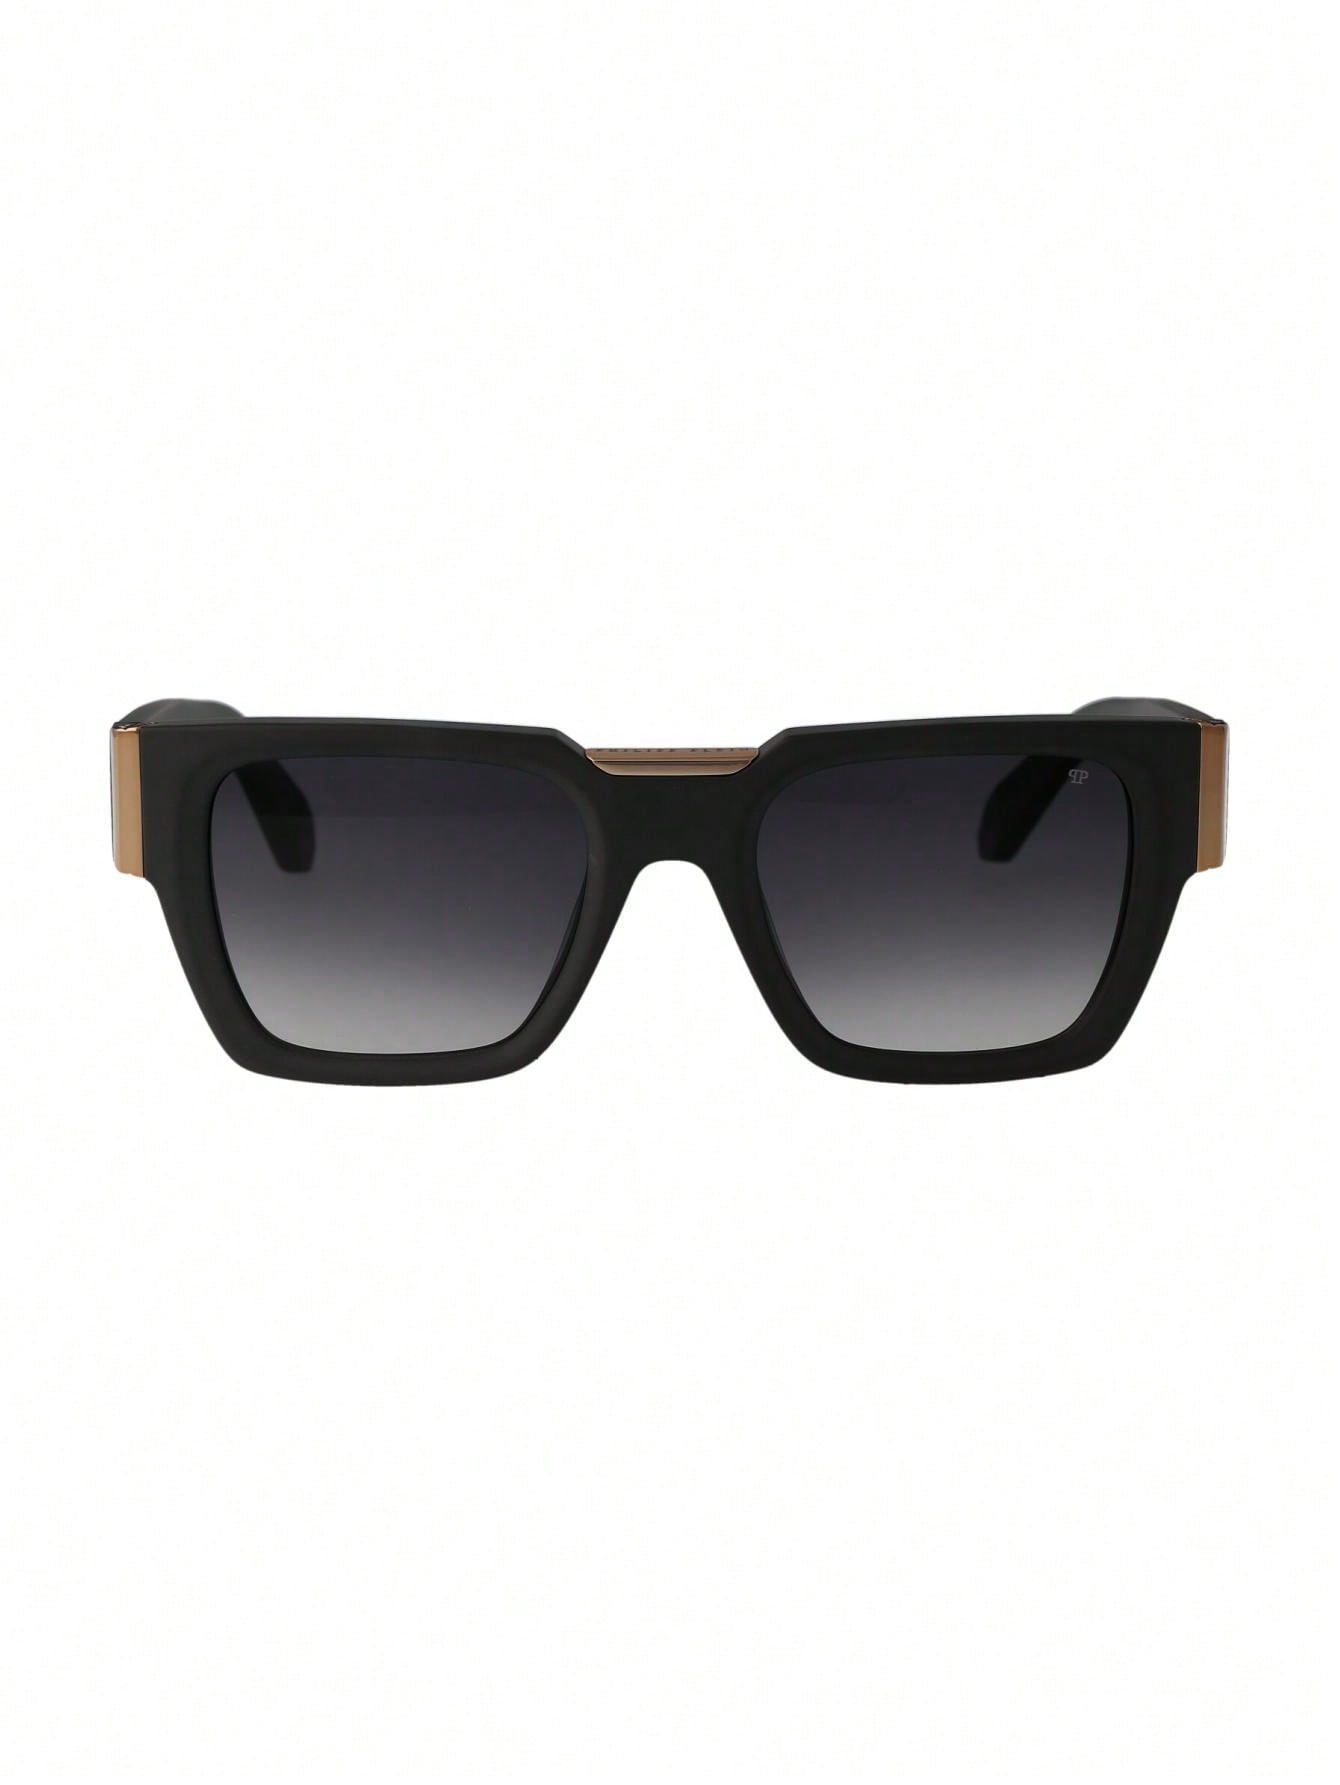 Мужские солнцезащитные очки Philipp Plein DECOR SPP095M0L46, многоцветный